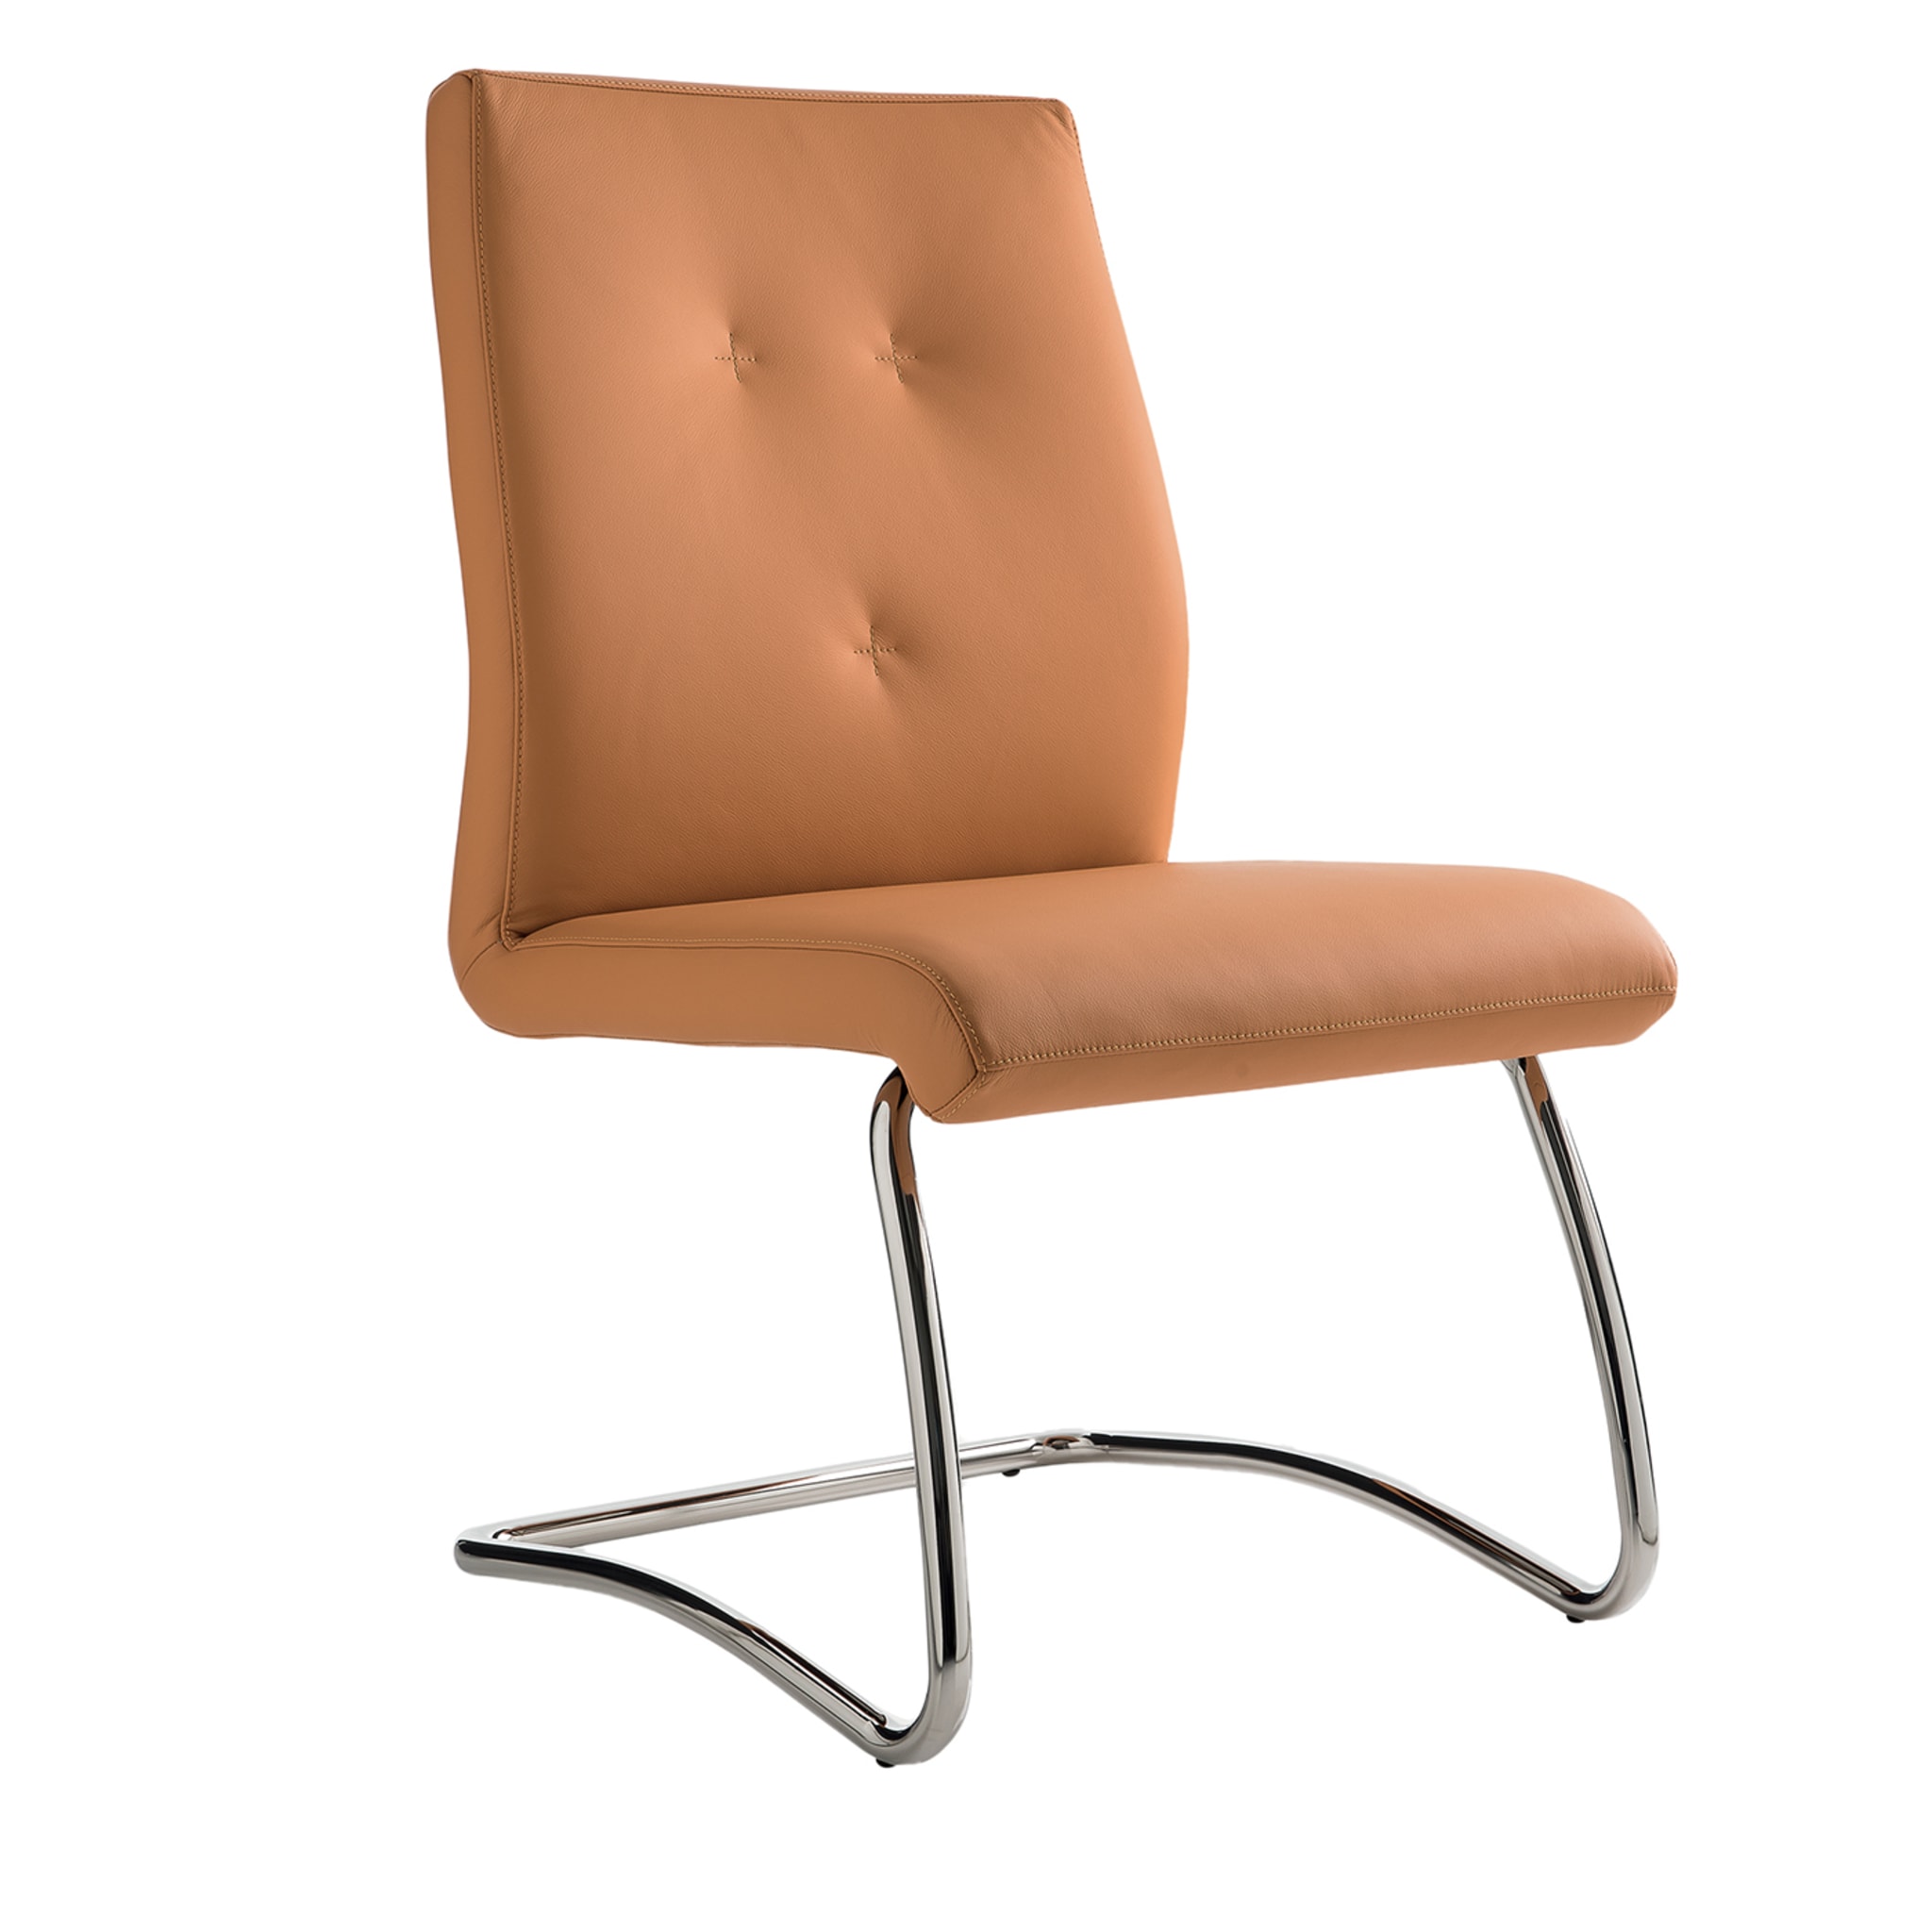 Ein orangefarbener Stuhl - Hauptansicht